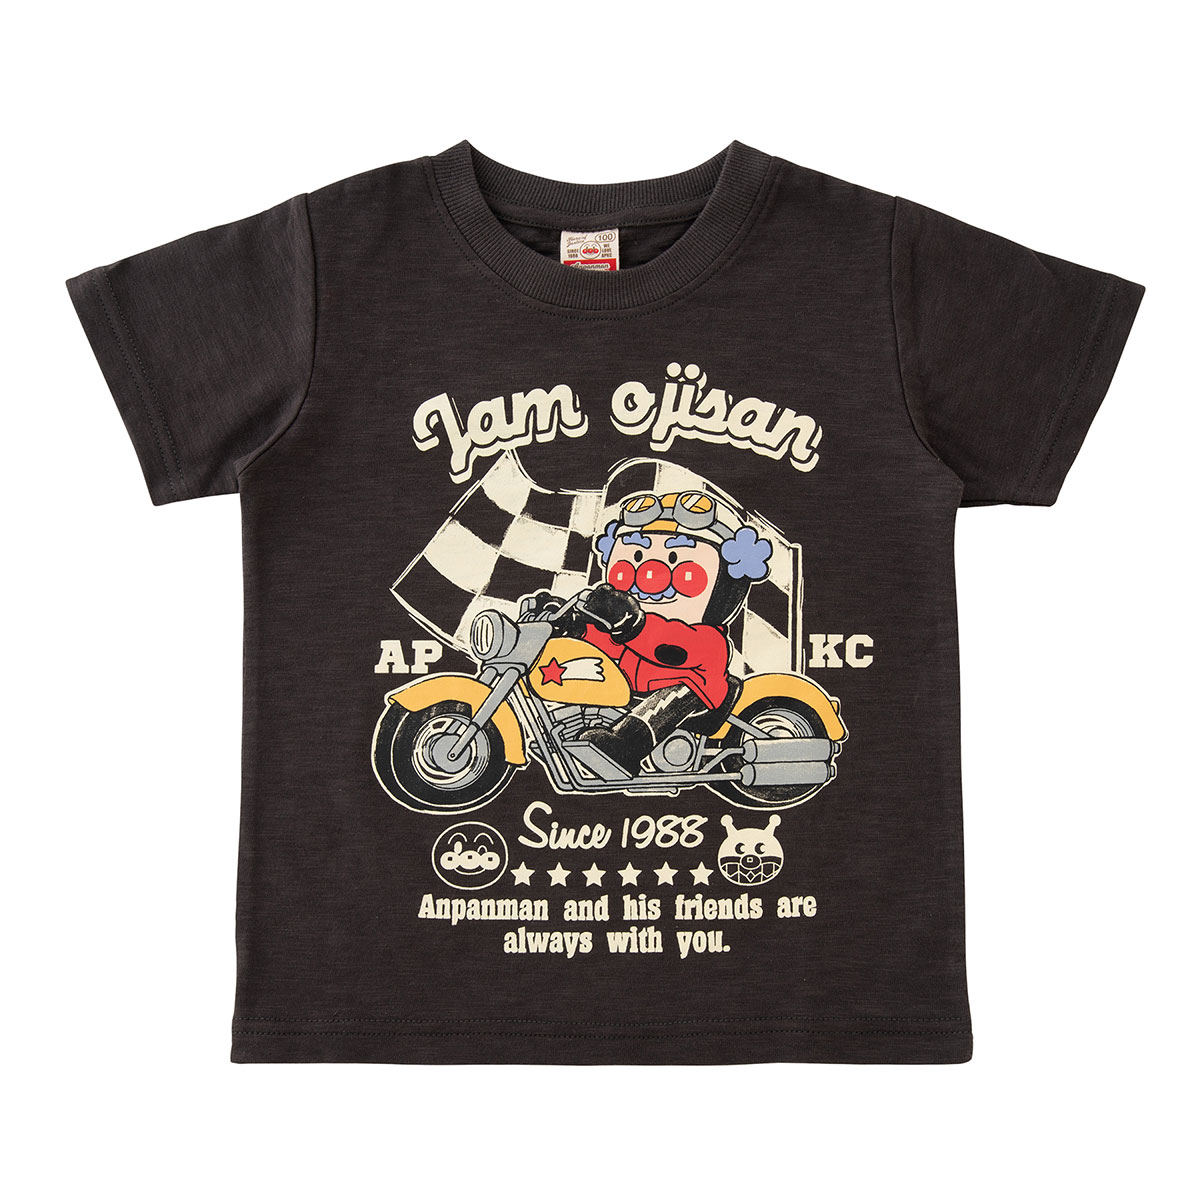 ジャムおじさんバイクtシャツ アイテム アンパンマンキッズコレクション Anpanman Kids Collection それいけ アンパンマン の楽しい世界観と おしゃれなデザインを融合させた子供服ブランド